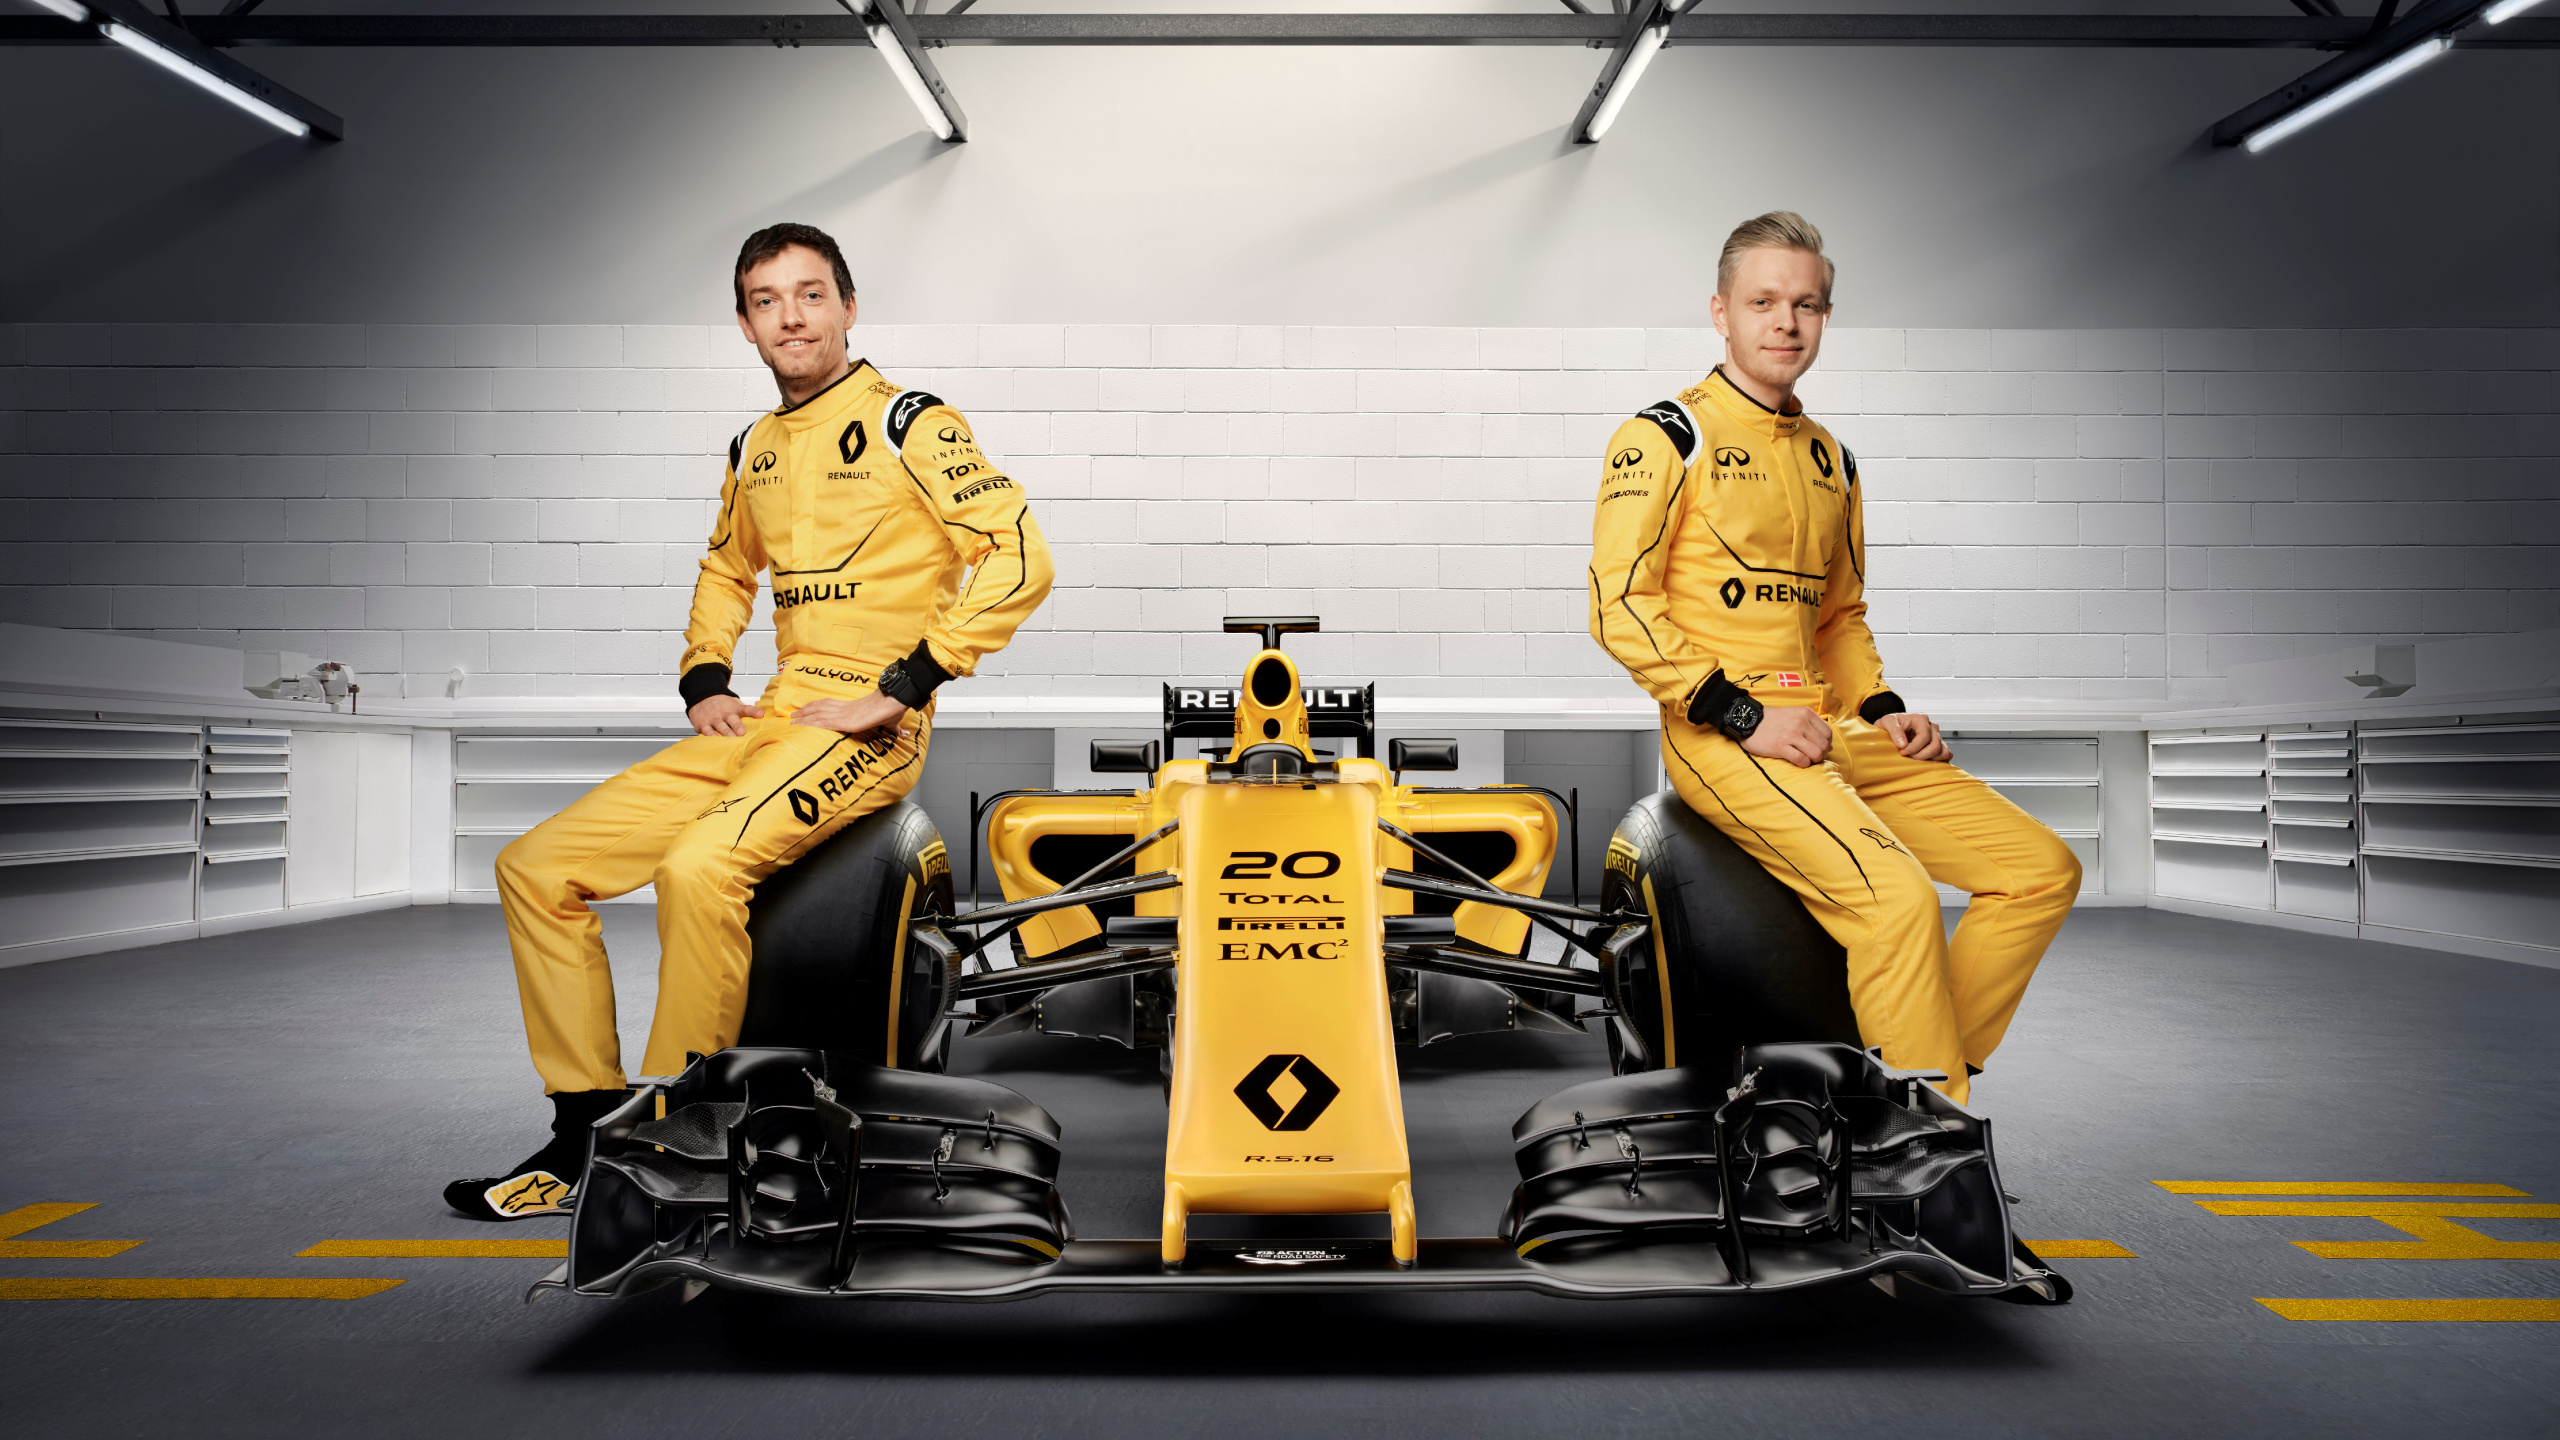 Обои 2016 Формула Один Чемпионат Мира, автогонки, Рено, желтый, команда в разрешении 2560x1440